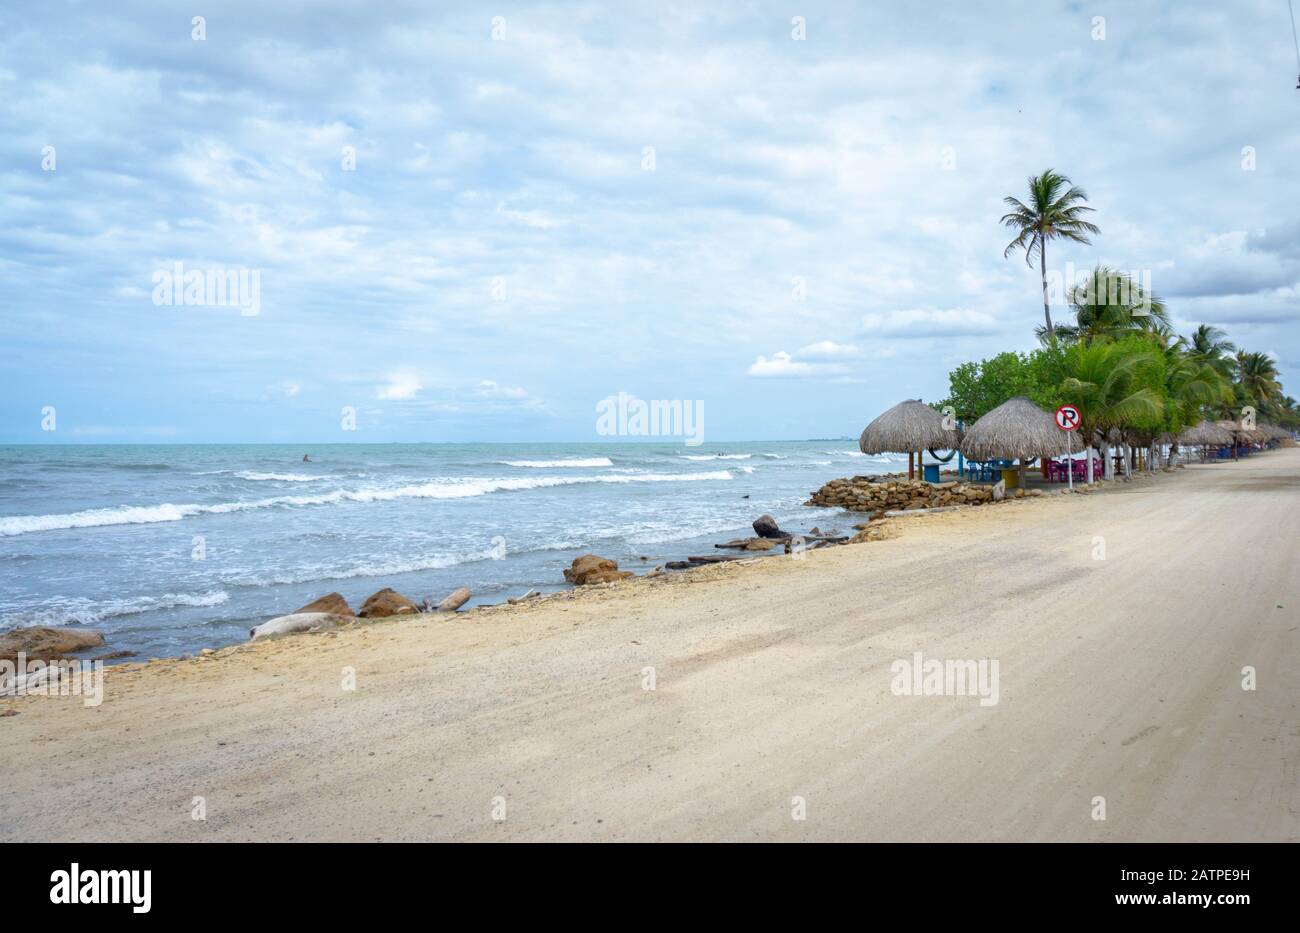 cabañas a la orilla del mar en playa colombiana Stock Photo